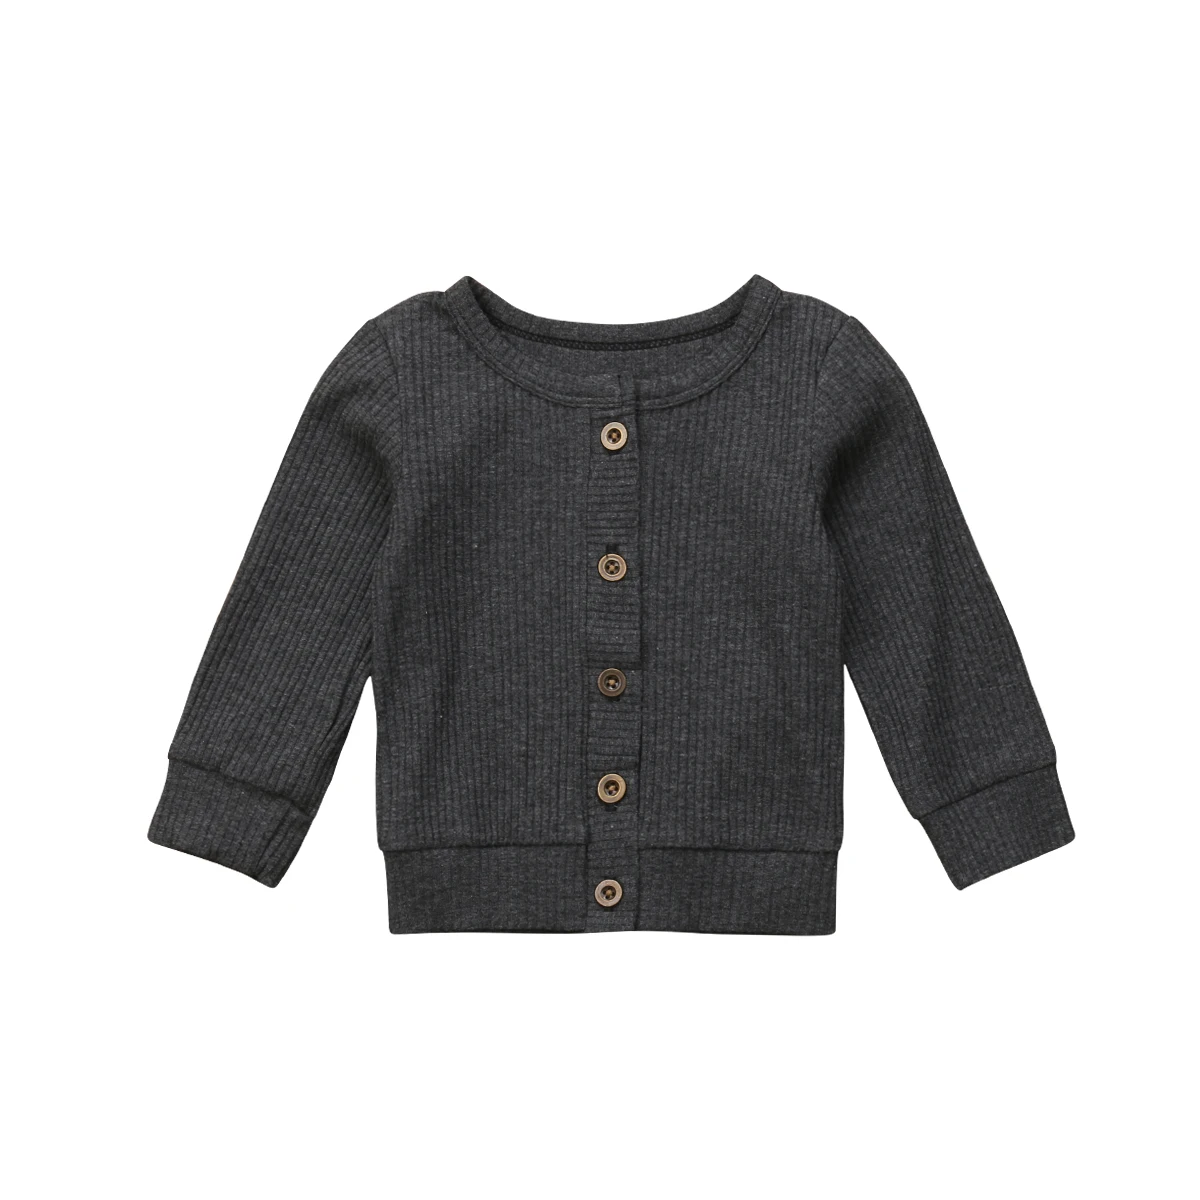 Одежда для новорожденных девочек от 0 до 24 месяцев вязаный свитер на пуговицах кардиган, пальто, топы - Цвет: Серый